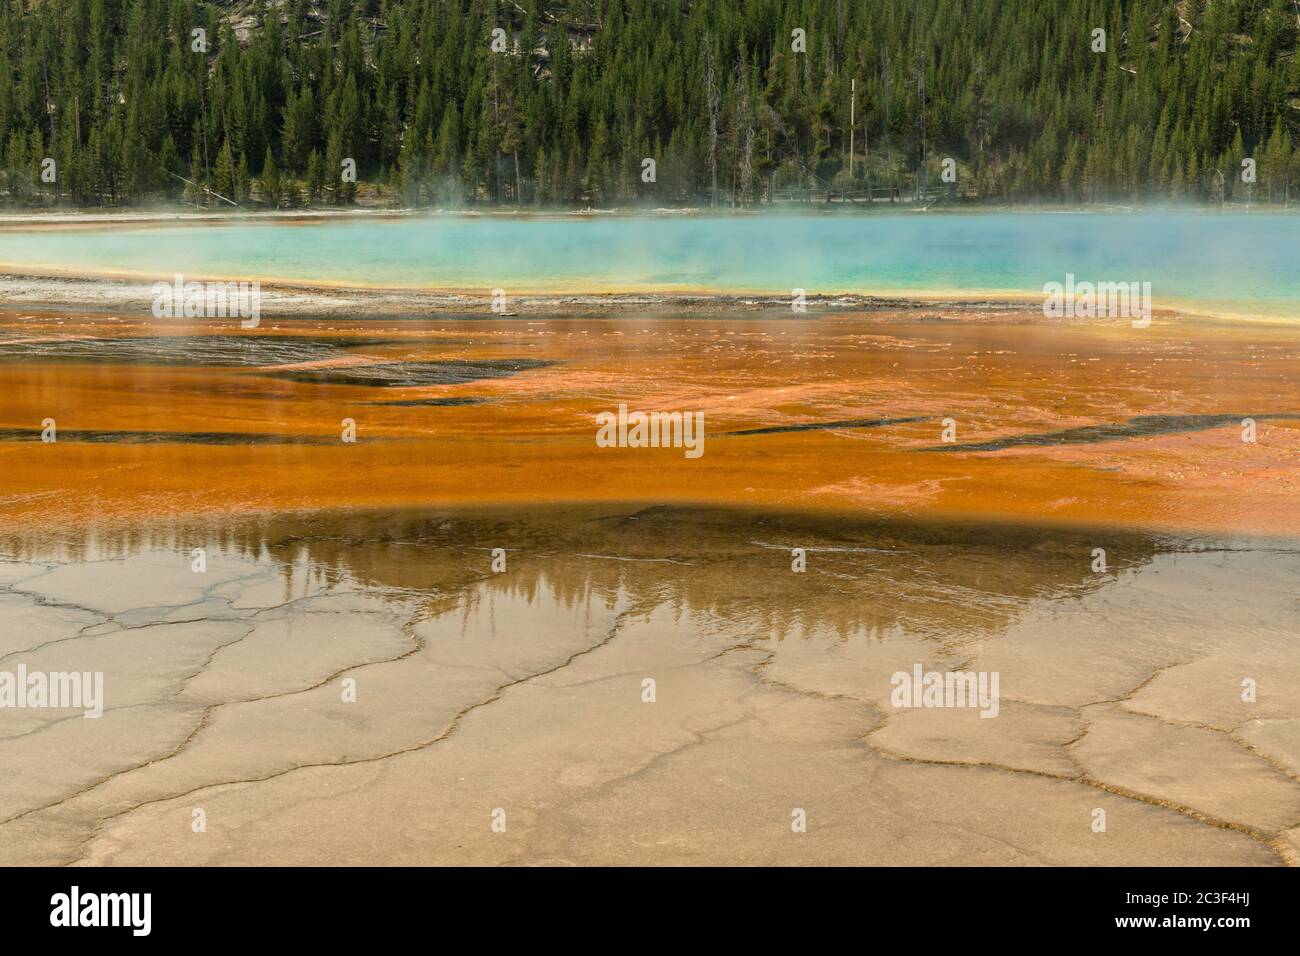 Bunte Cyanobakterien-Matten umgeben die Grand Prismatic Spring, die größte heiße Quelle im Yellowstone National Park und drittgrößte der Welt. Grand Prismatic ist etwa 250 mal 300 Fuß groß, durchschnittlich 160 Grad Fahrenheit und ist bis zu 160 Fuß tief. Die hellen Farben um die Quelle sind von Mikroorganismen, die im Heißwasserabfluss wachsen. Die Grand Prismatic Spring ist Teil der Midway Geyser Basin Excelsior Group in Yellowstone, Wyoming. Stockfoto